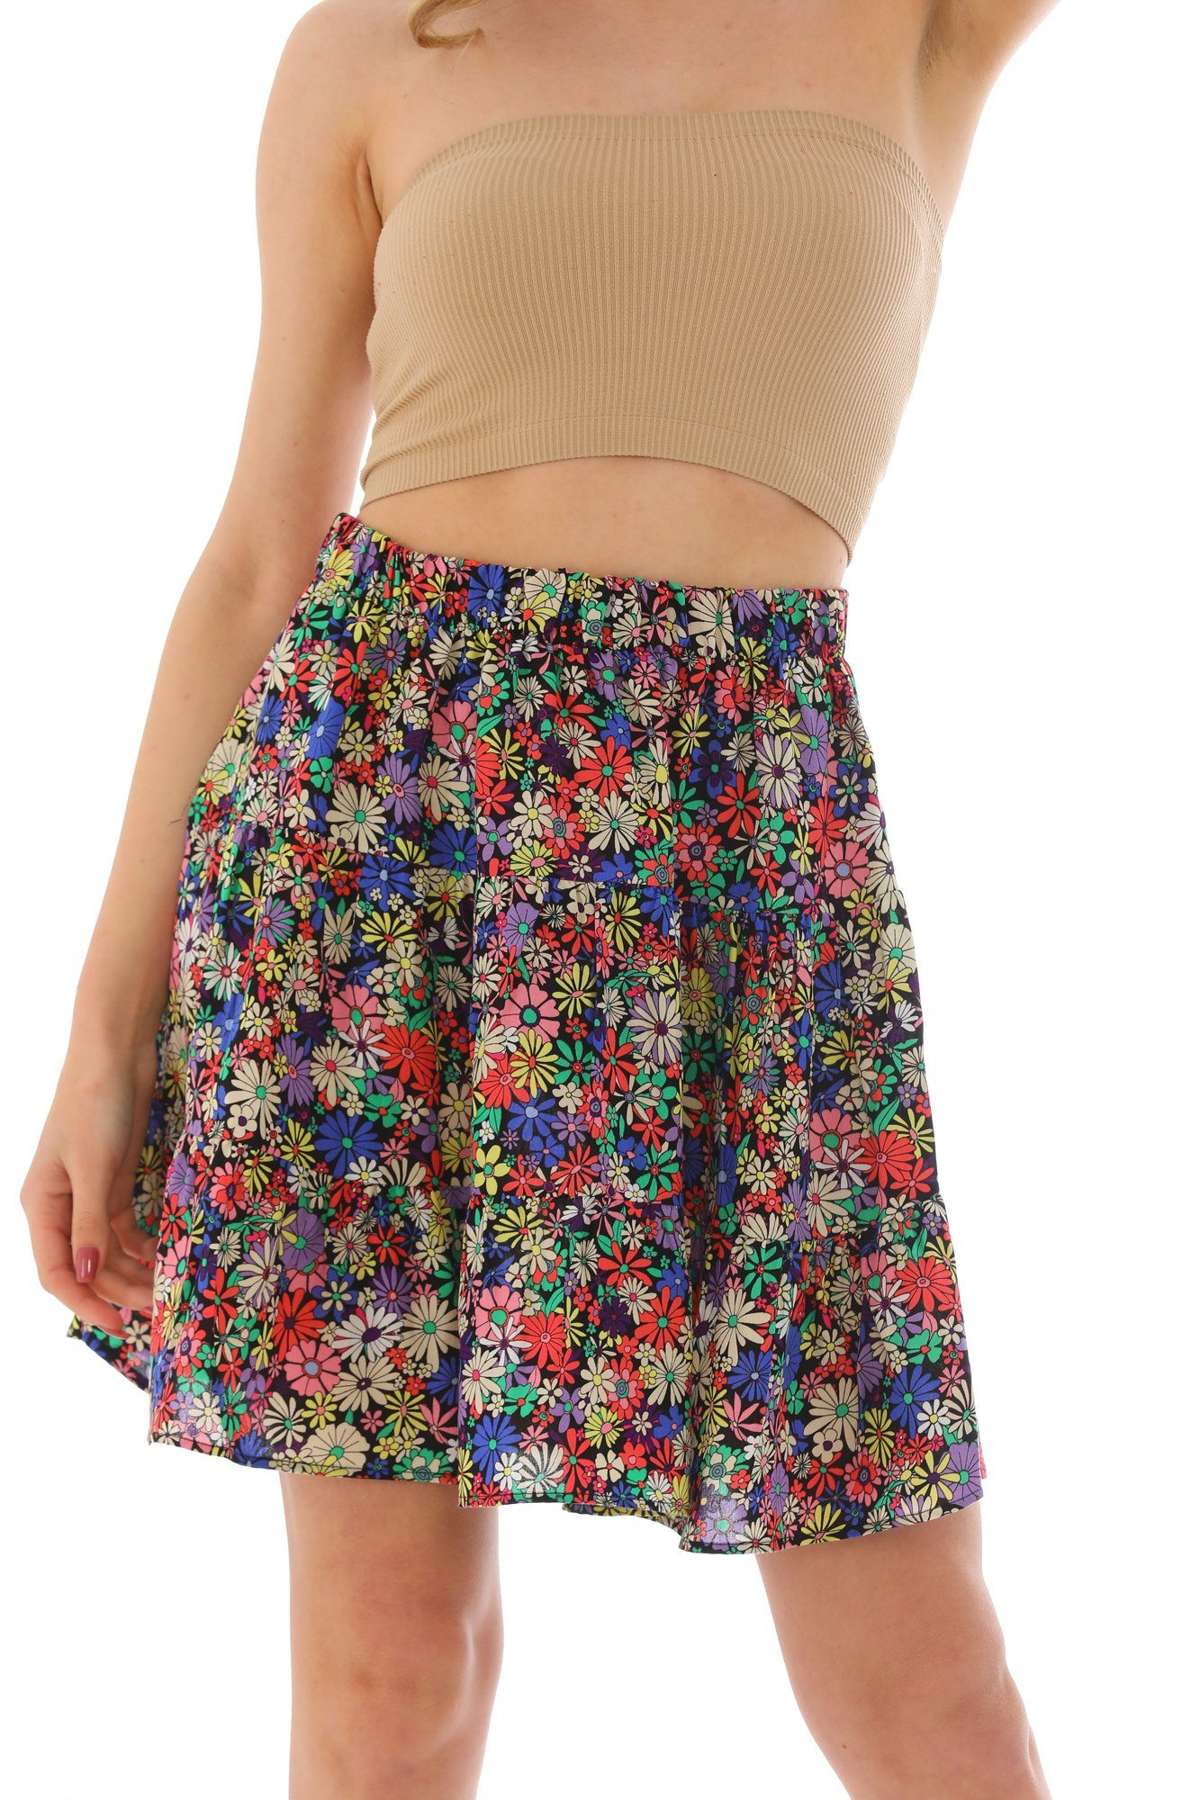 Летняя юбка многоярусная юбка с принтом по всей поверхности и эластичным поясом